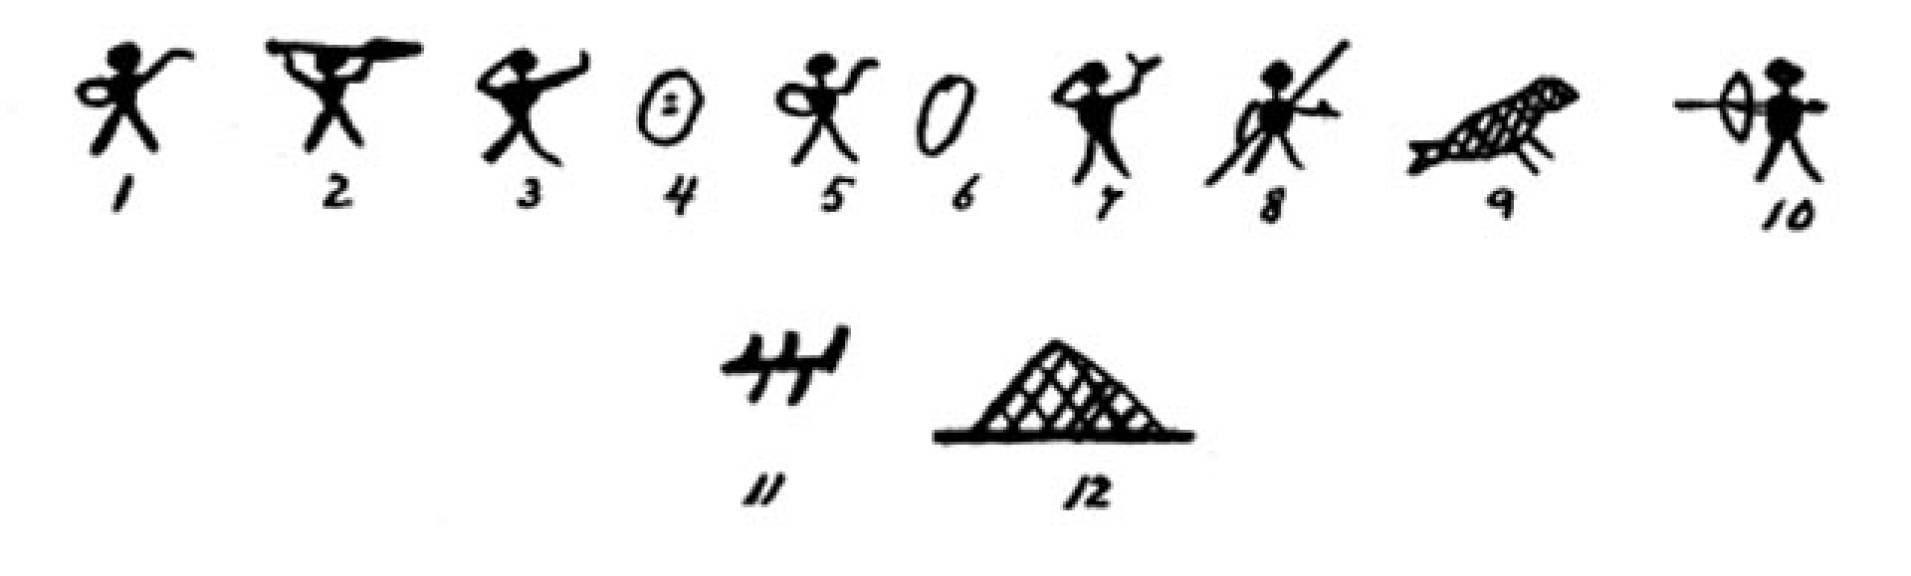 alutiiq-pictographs